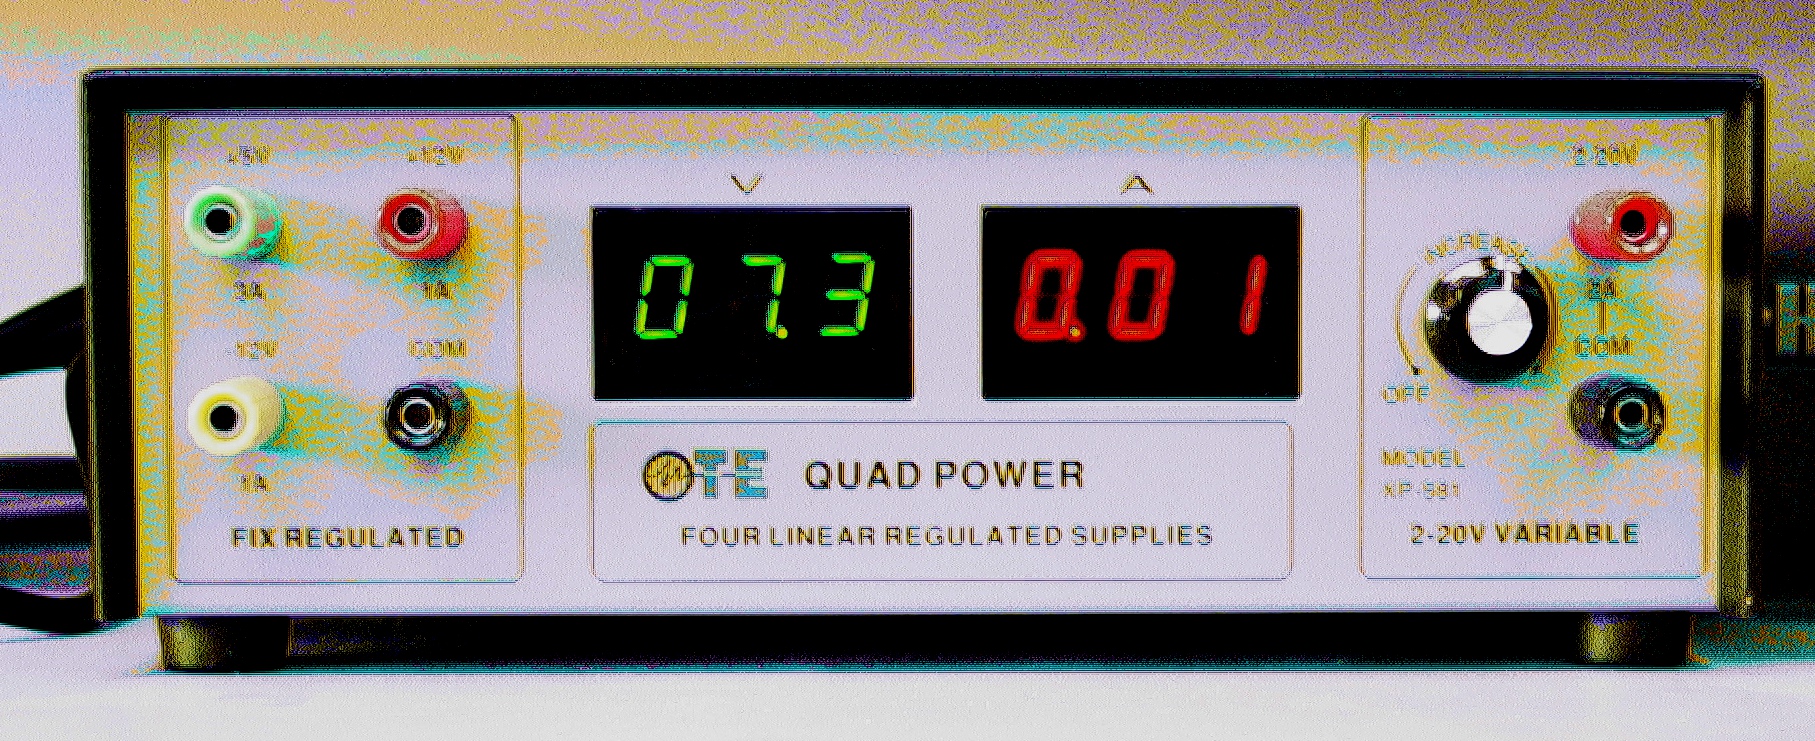 TE Quad power supply